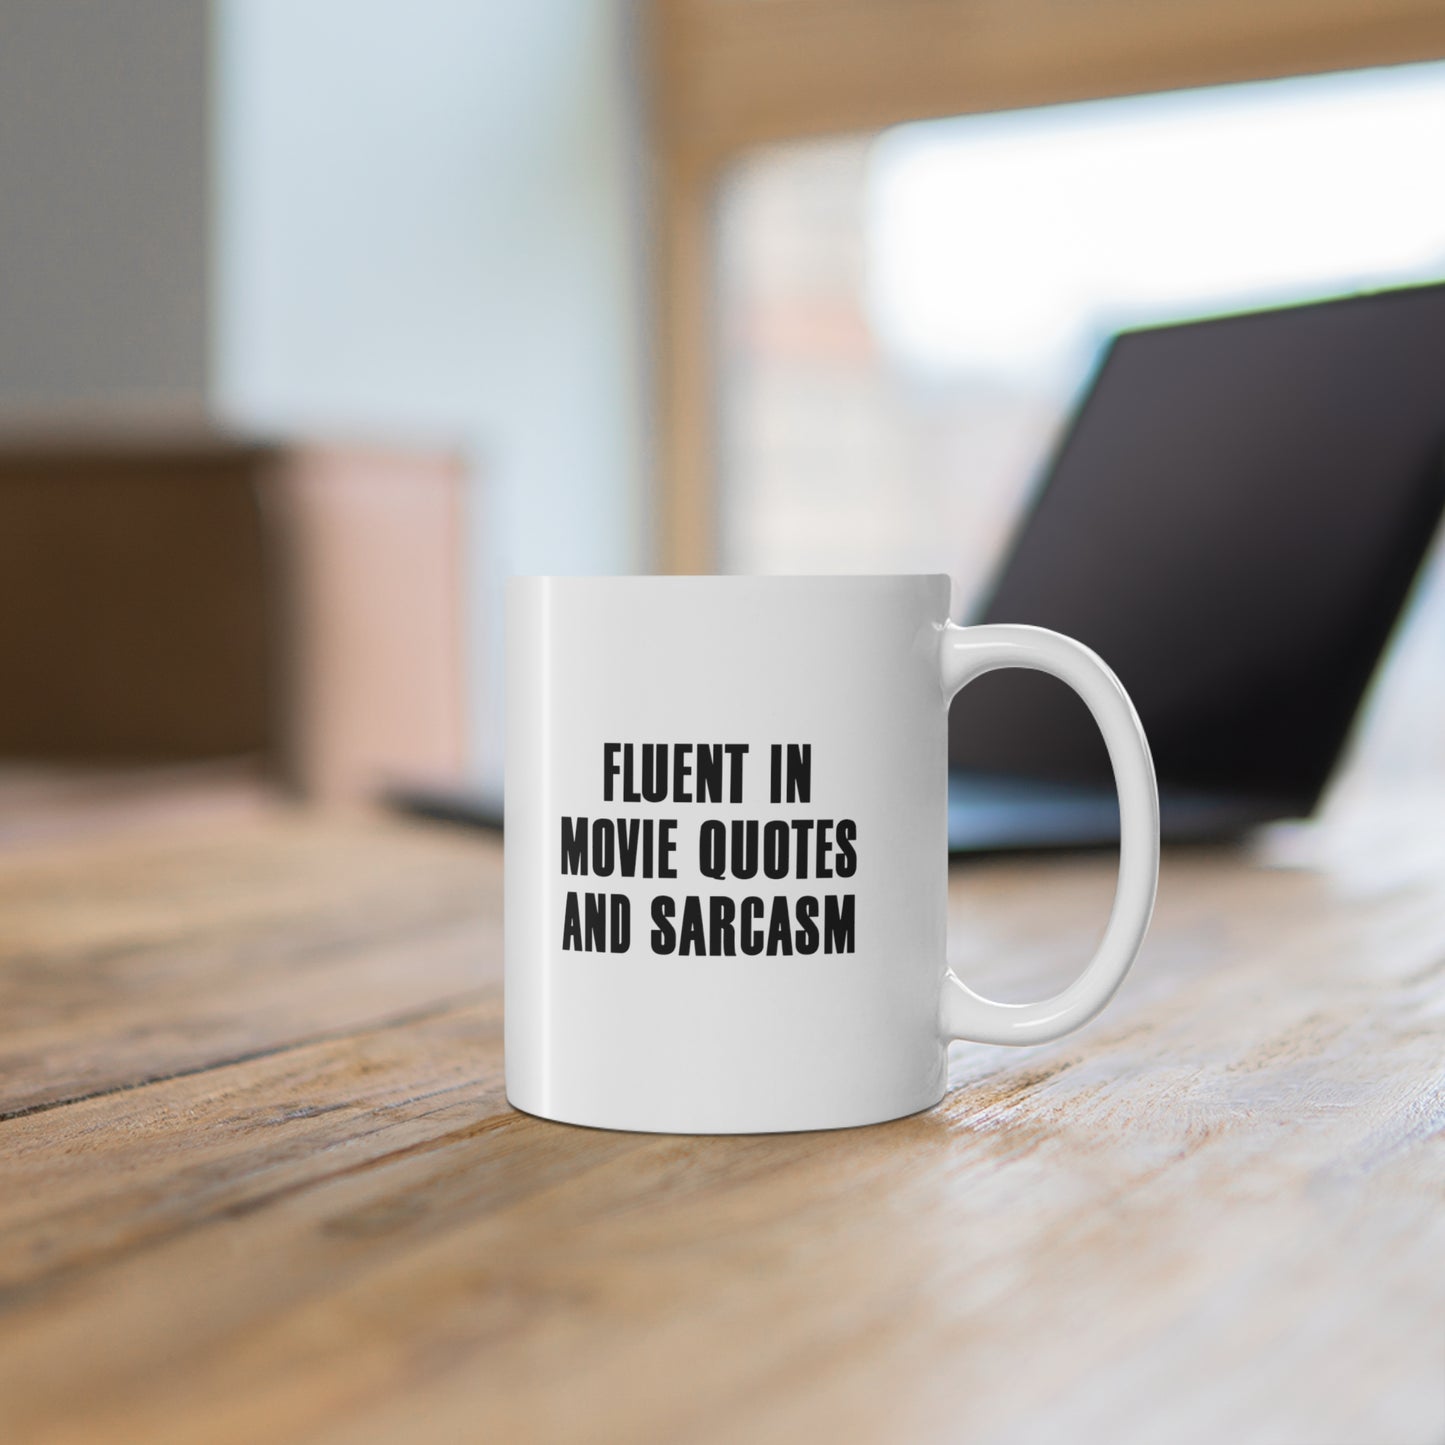 11oz ceramic mug with quote Fluent in Movie Quotes and Sarcasm